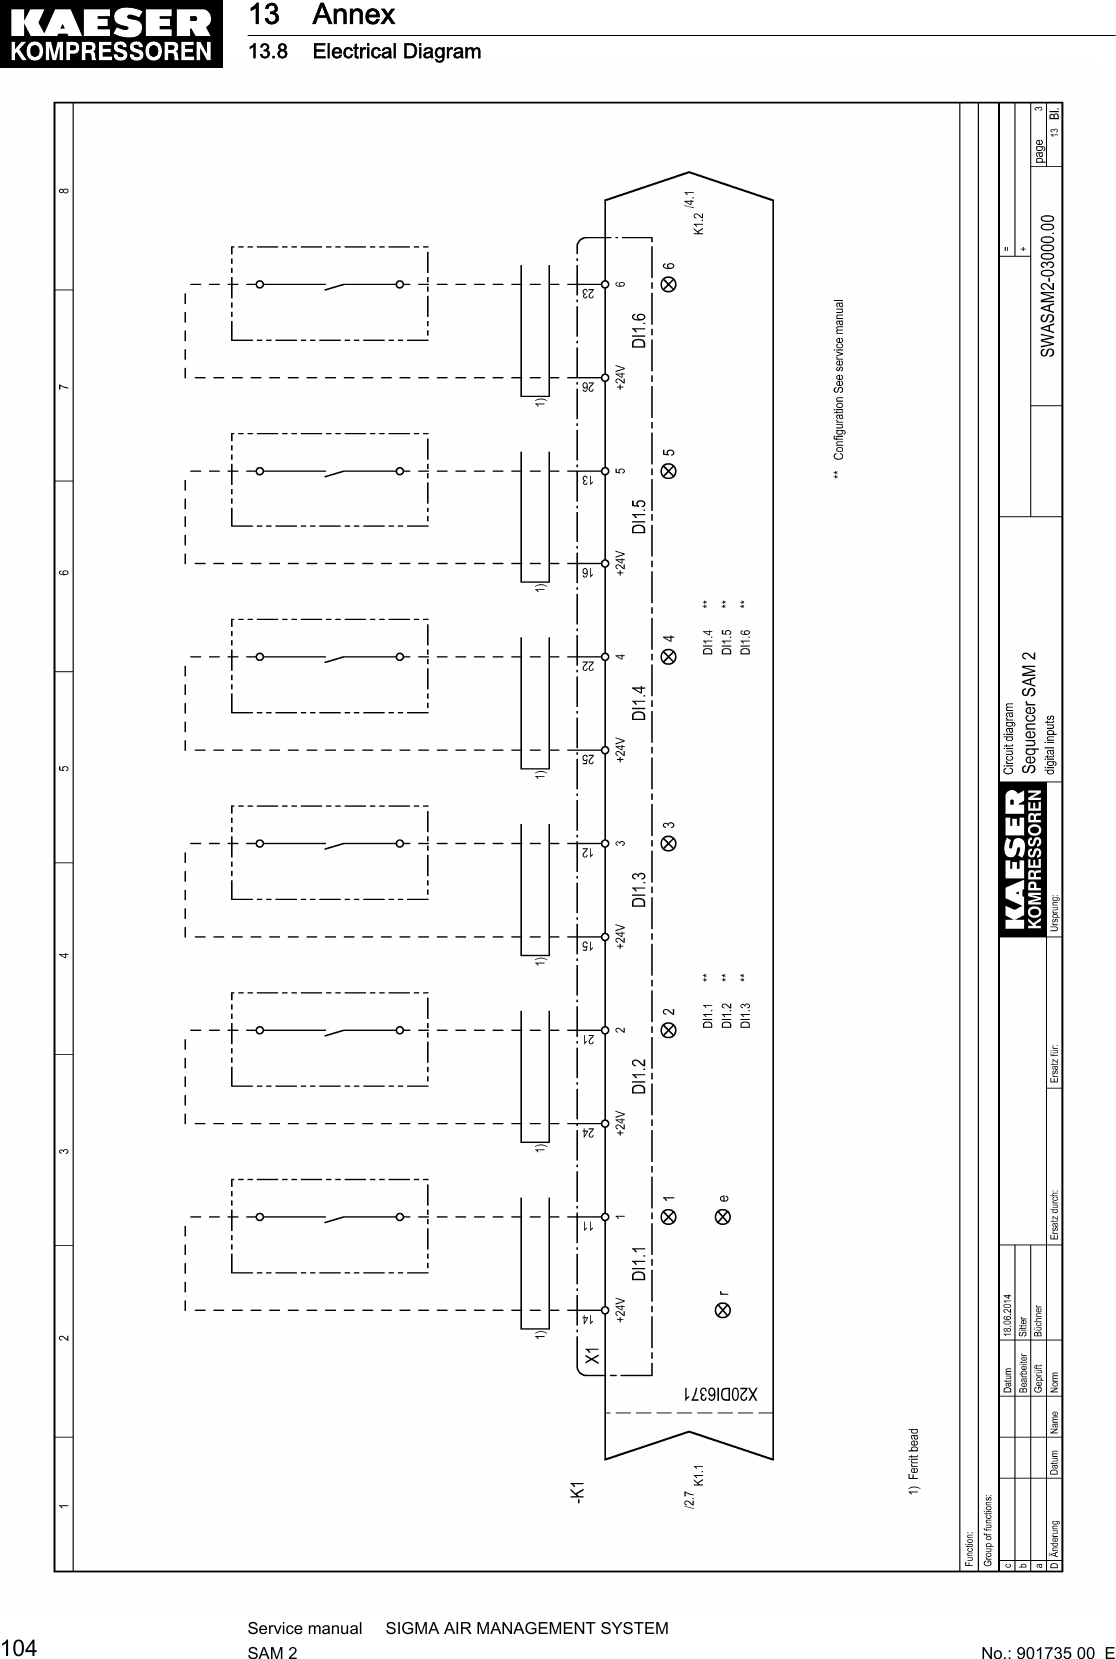 13 Annex13.8 Electrical Diagram104Service manual     SIGMA AIR MANAGEMENT SYSTEMSAM 2  No.: 901735 00  E